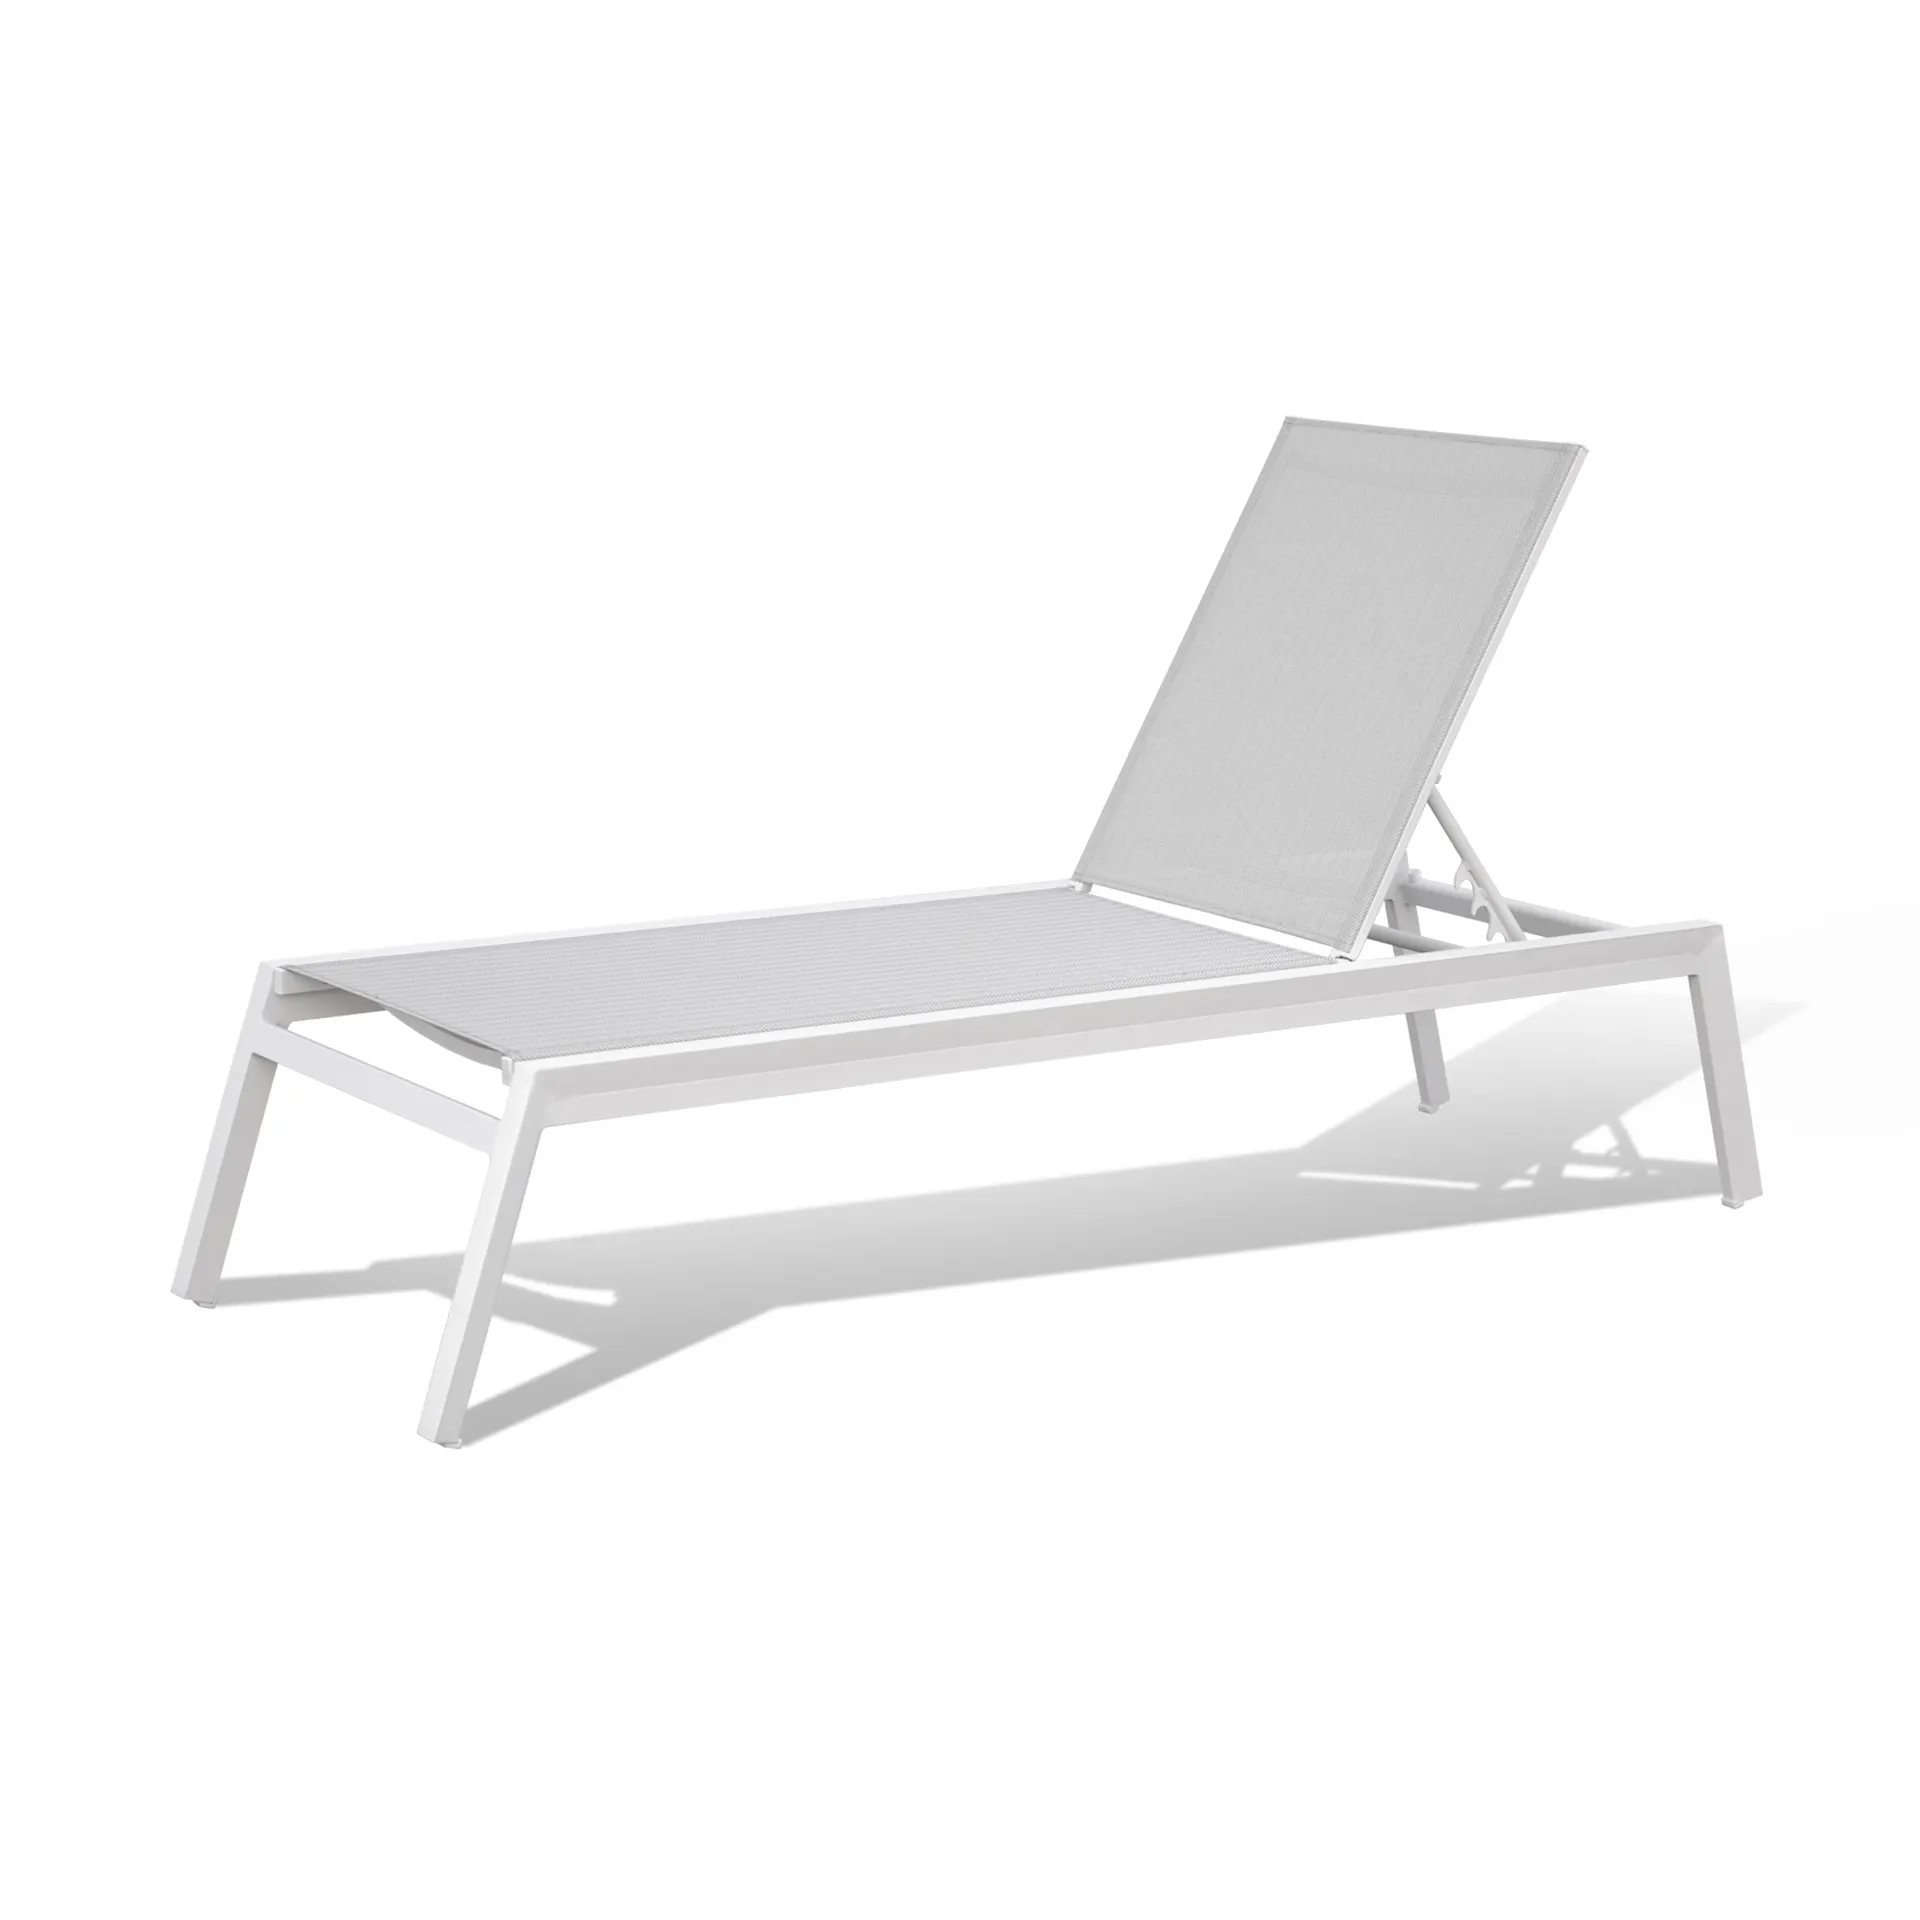 Artie'nin yüksek kaliteli bahçe mobilyaları havuz şezlong sandalyeler ayarlanabilir plaj açık güneş şezlong